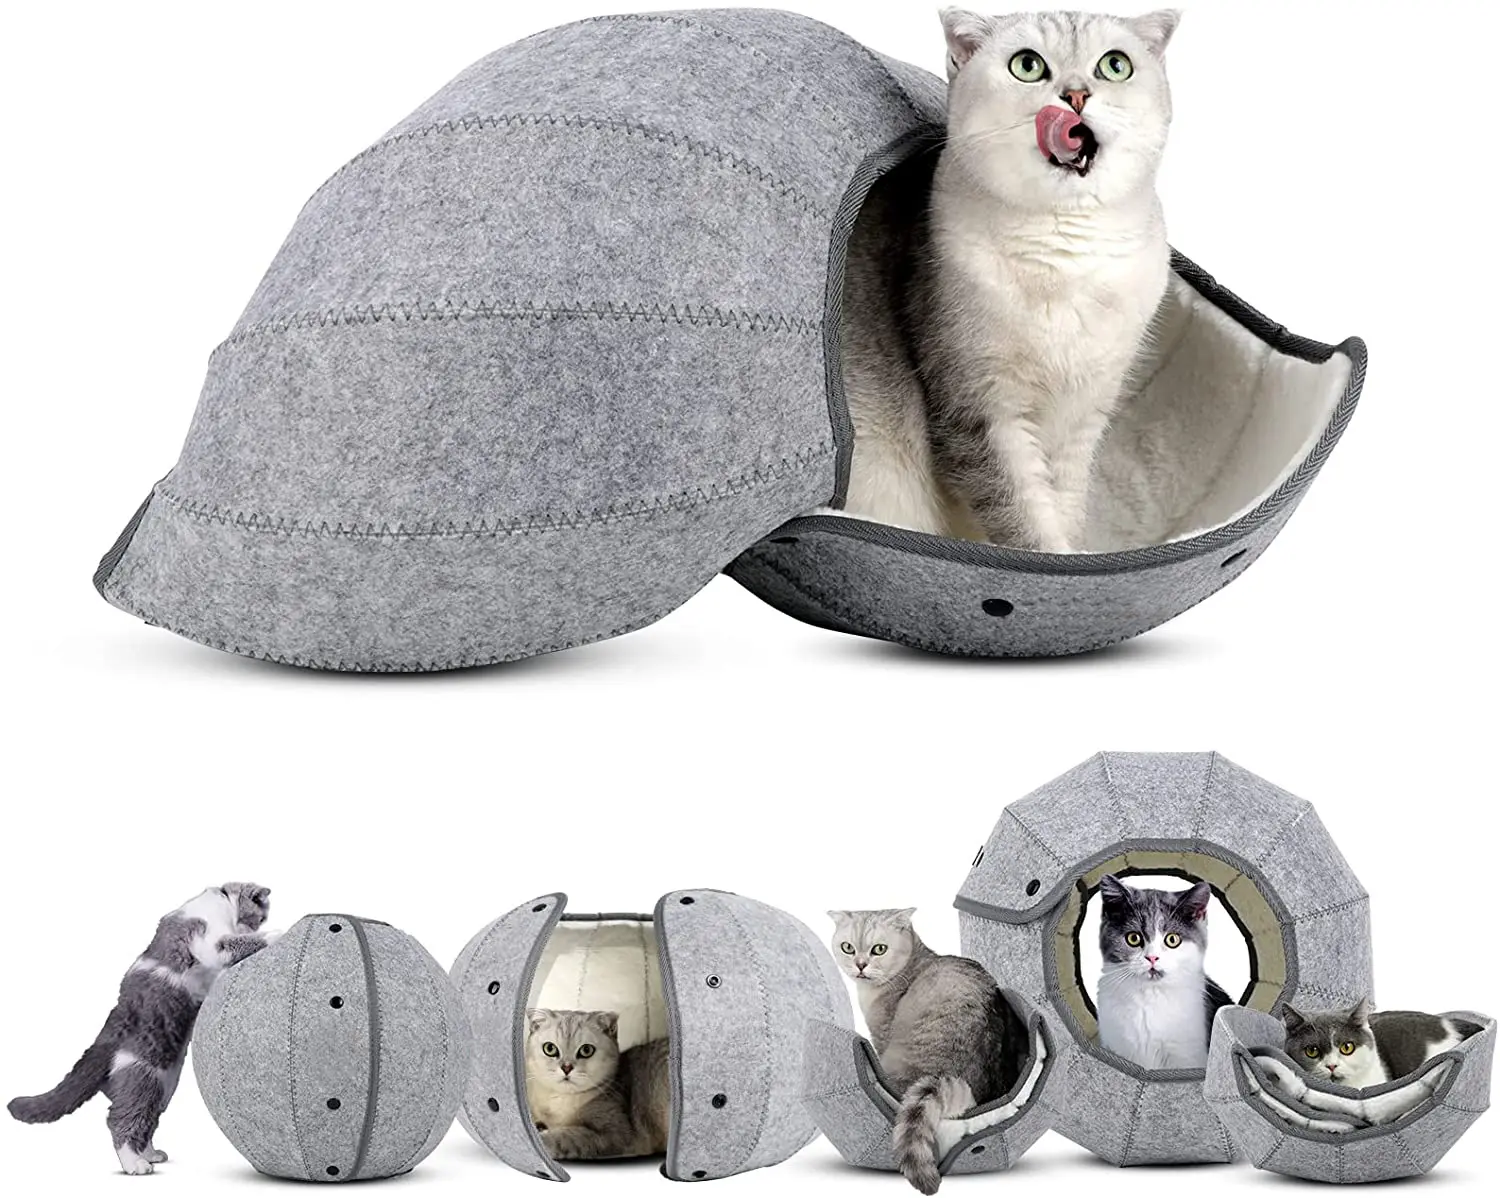 대화 형 소프트 접이식 동굴 고양이 침대 구 모양 접을 수있는 펠트 둥지 실내 장난감 애완 동물 집 고양이 터널 침대